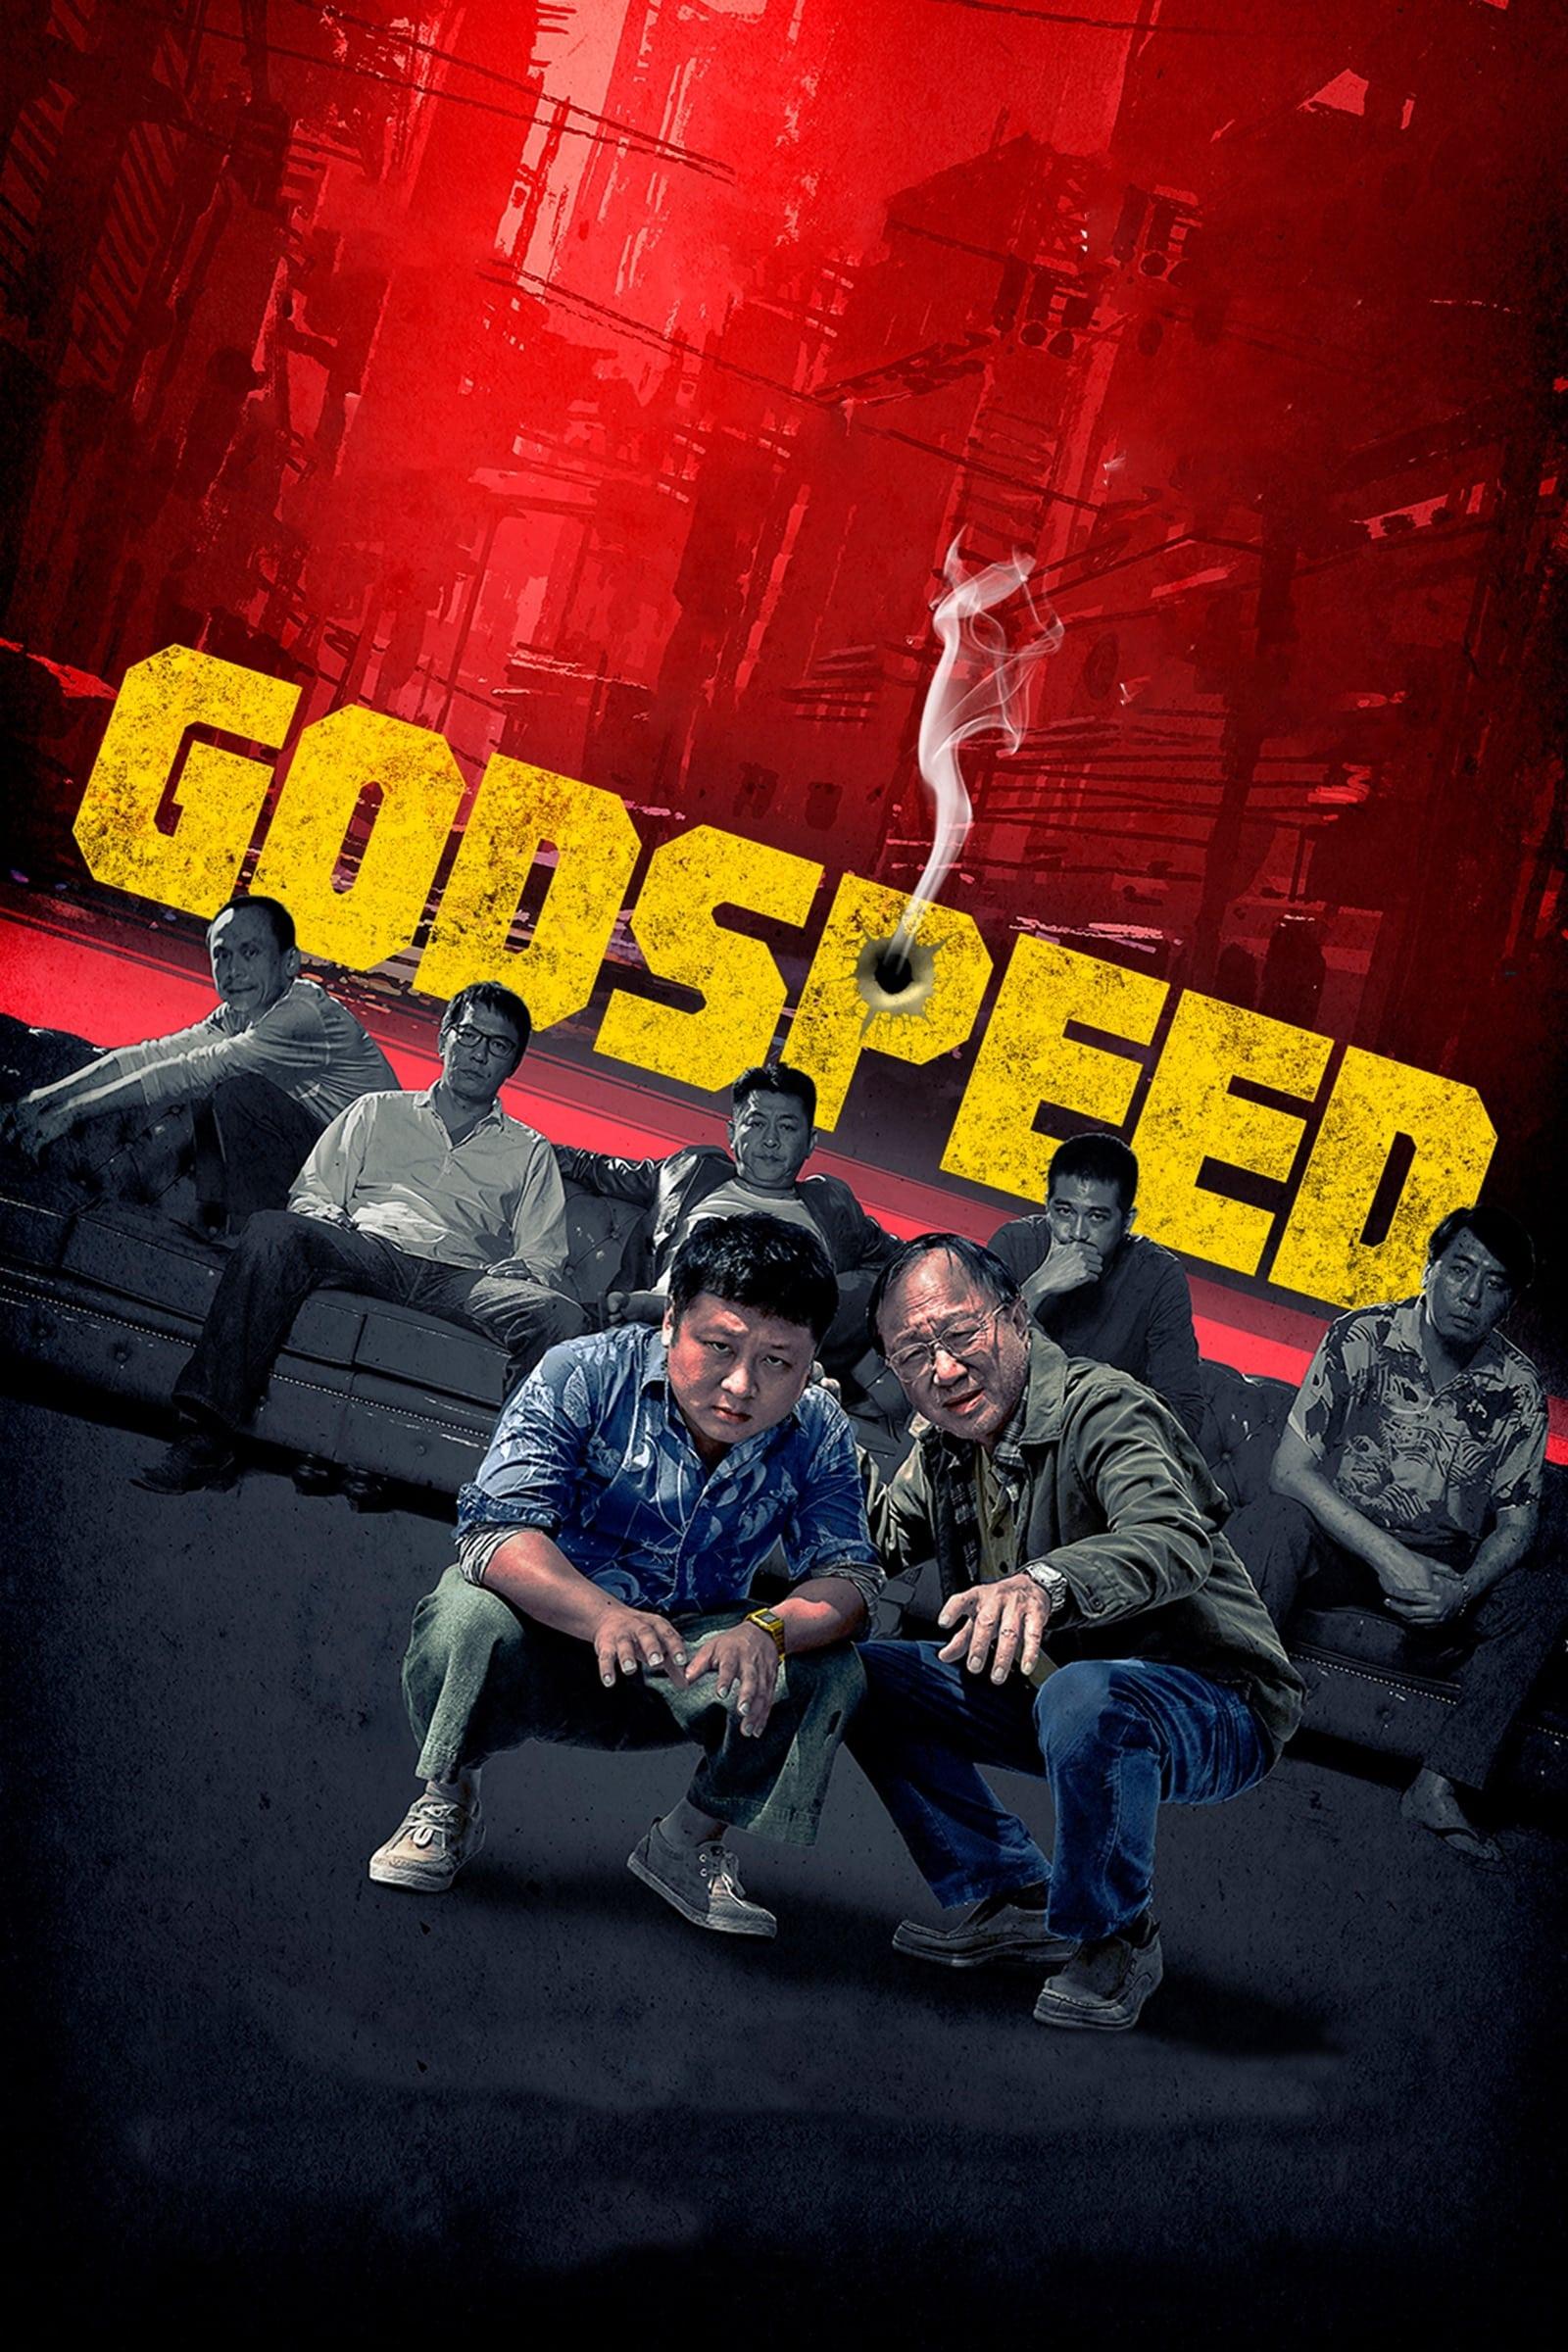 Godspeed poster